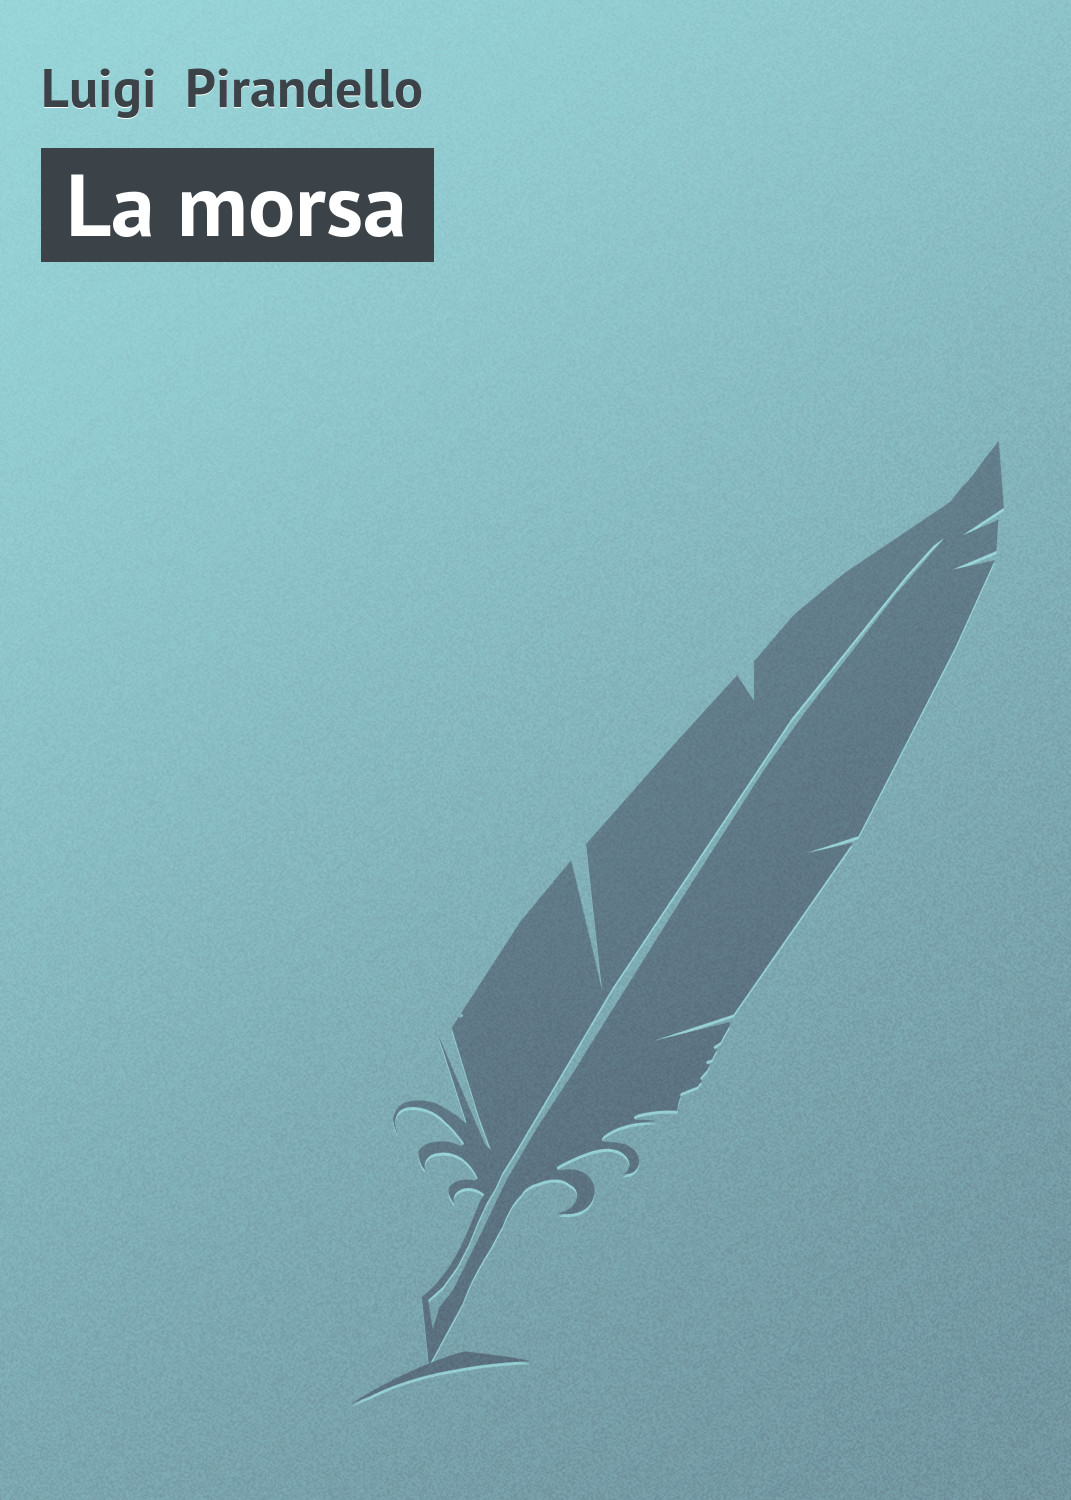 Книга La morsa из серии , созданная Luigi Pirandello, может относится к жанру Зарубежная старинная литература, Зарубежная классика. Стоимость электронной книги La morsa с идентификатором 21103830 составляет 5.99 руб.